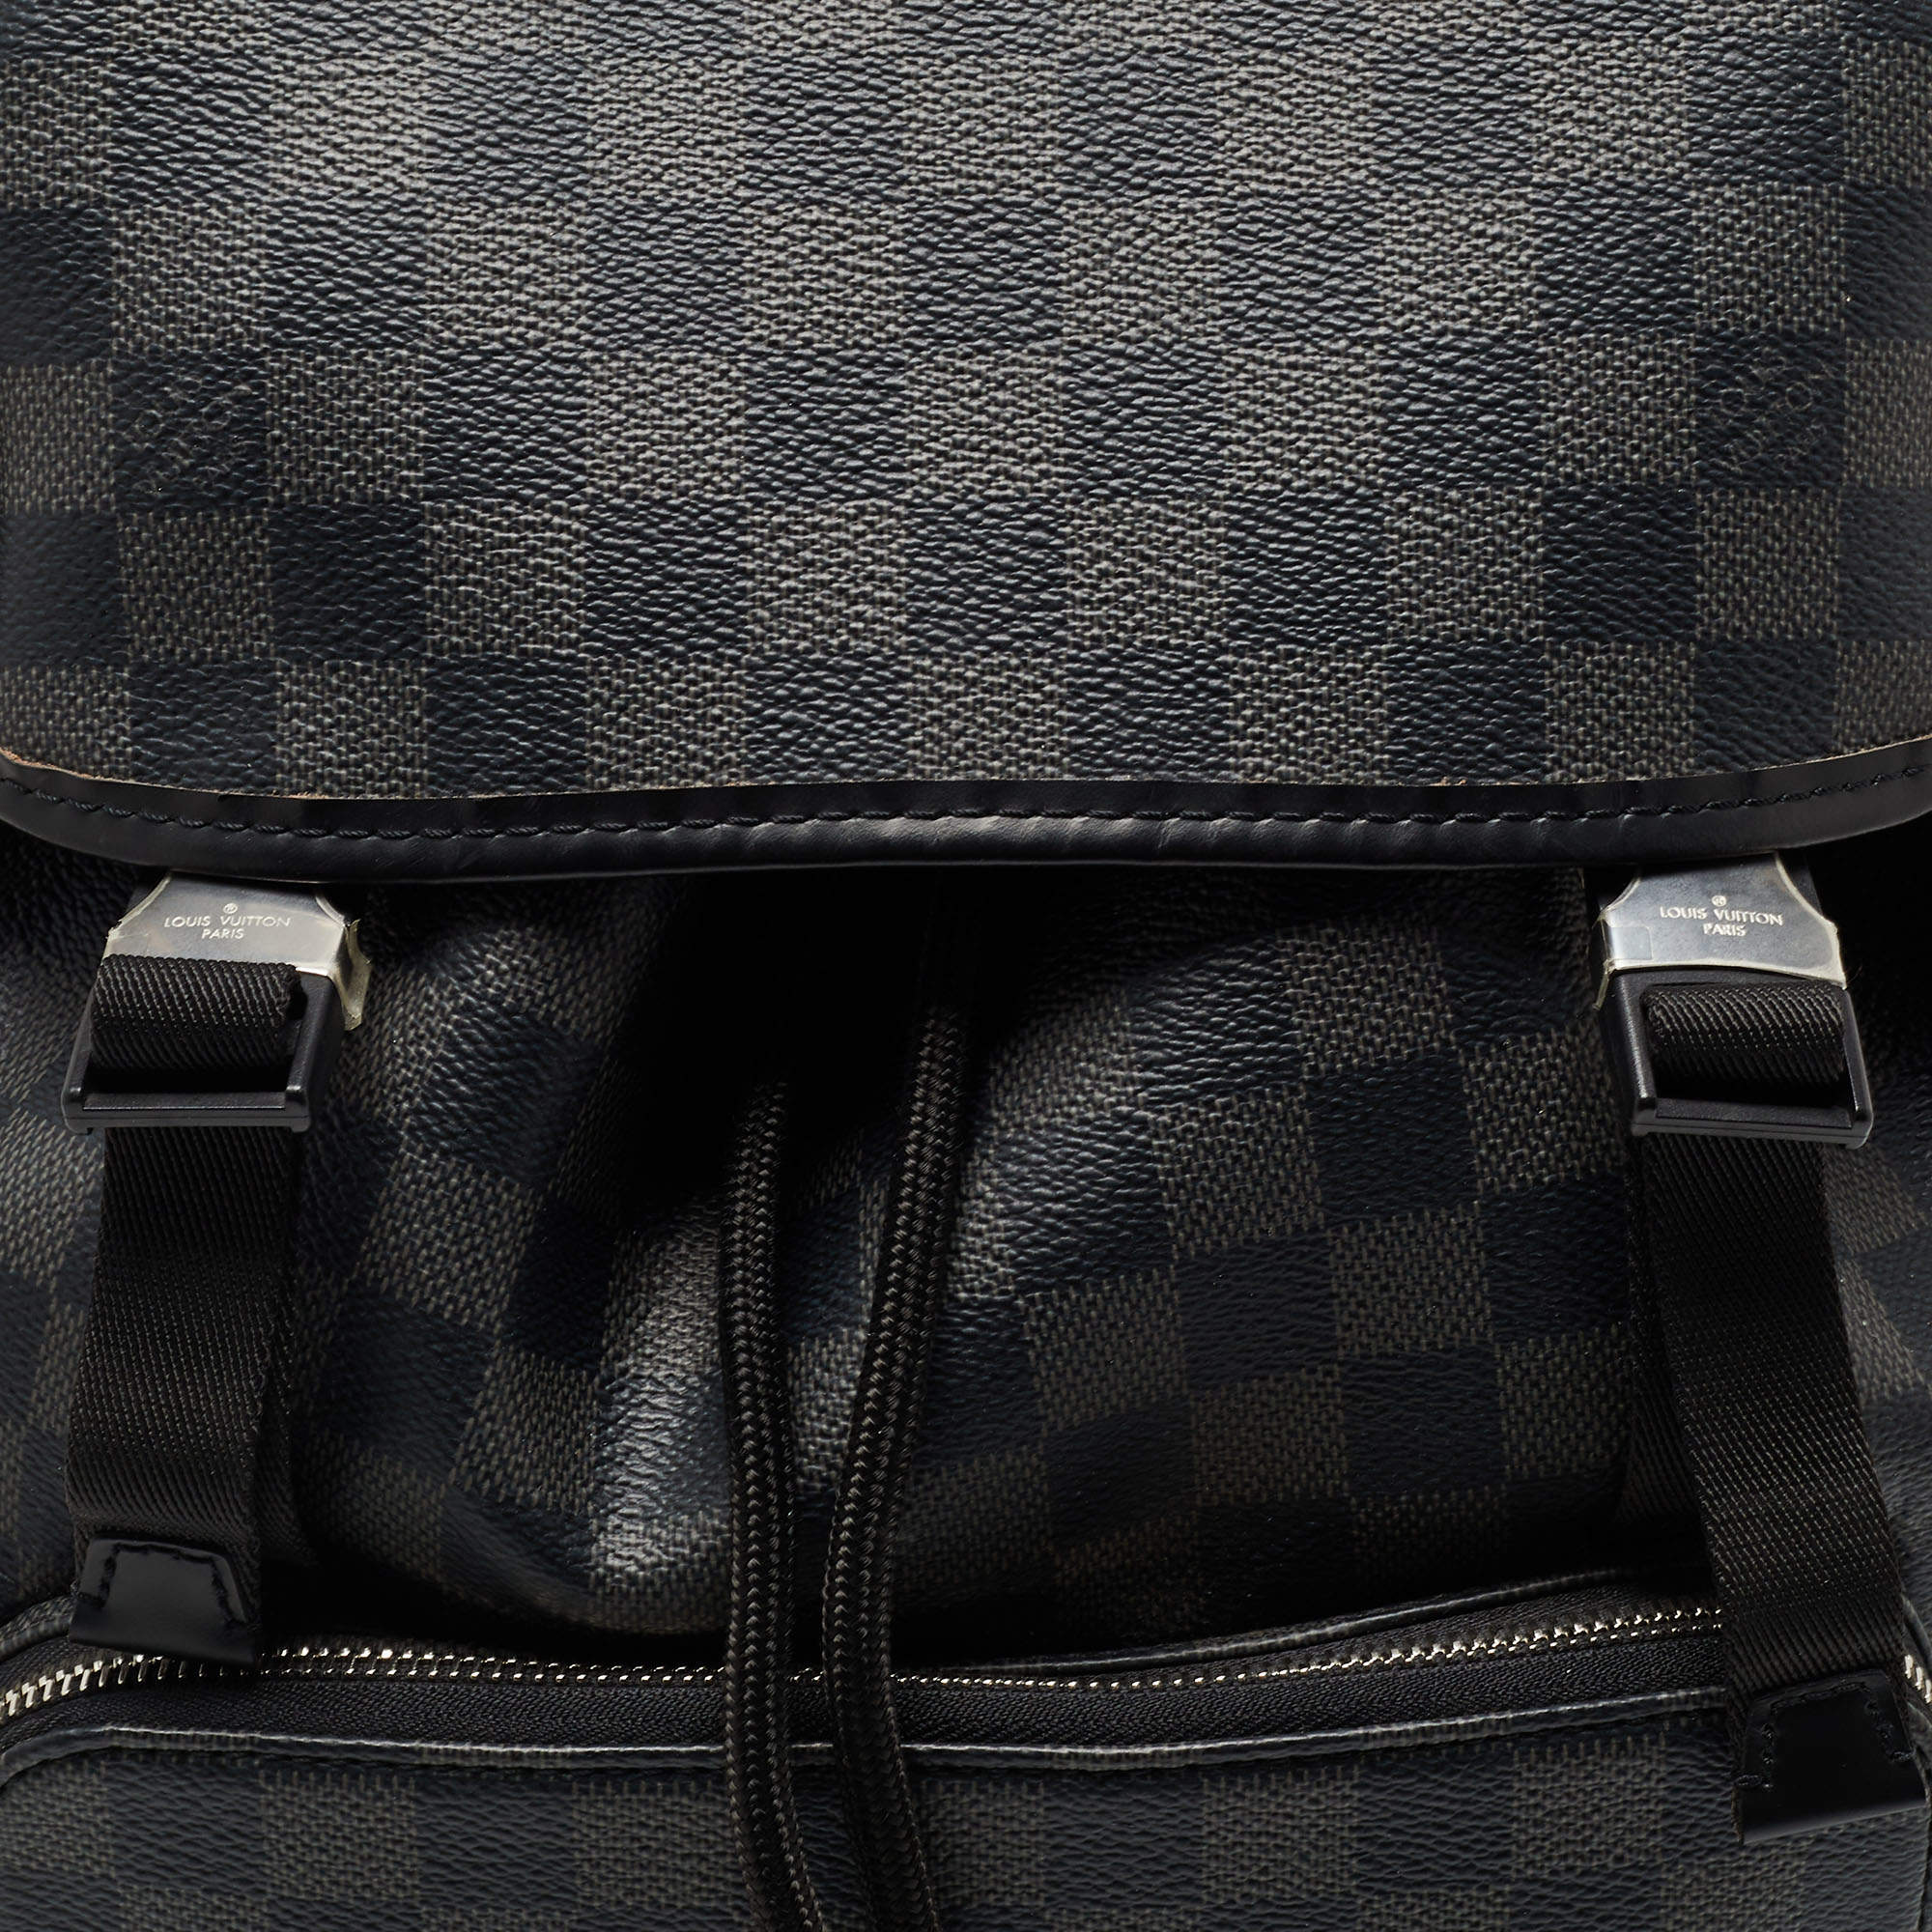 AUTHENTIC Men's Louis Vuitton Zack Backpack Damier Graphite Canvas